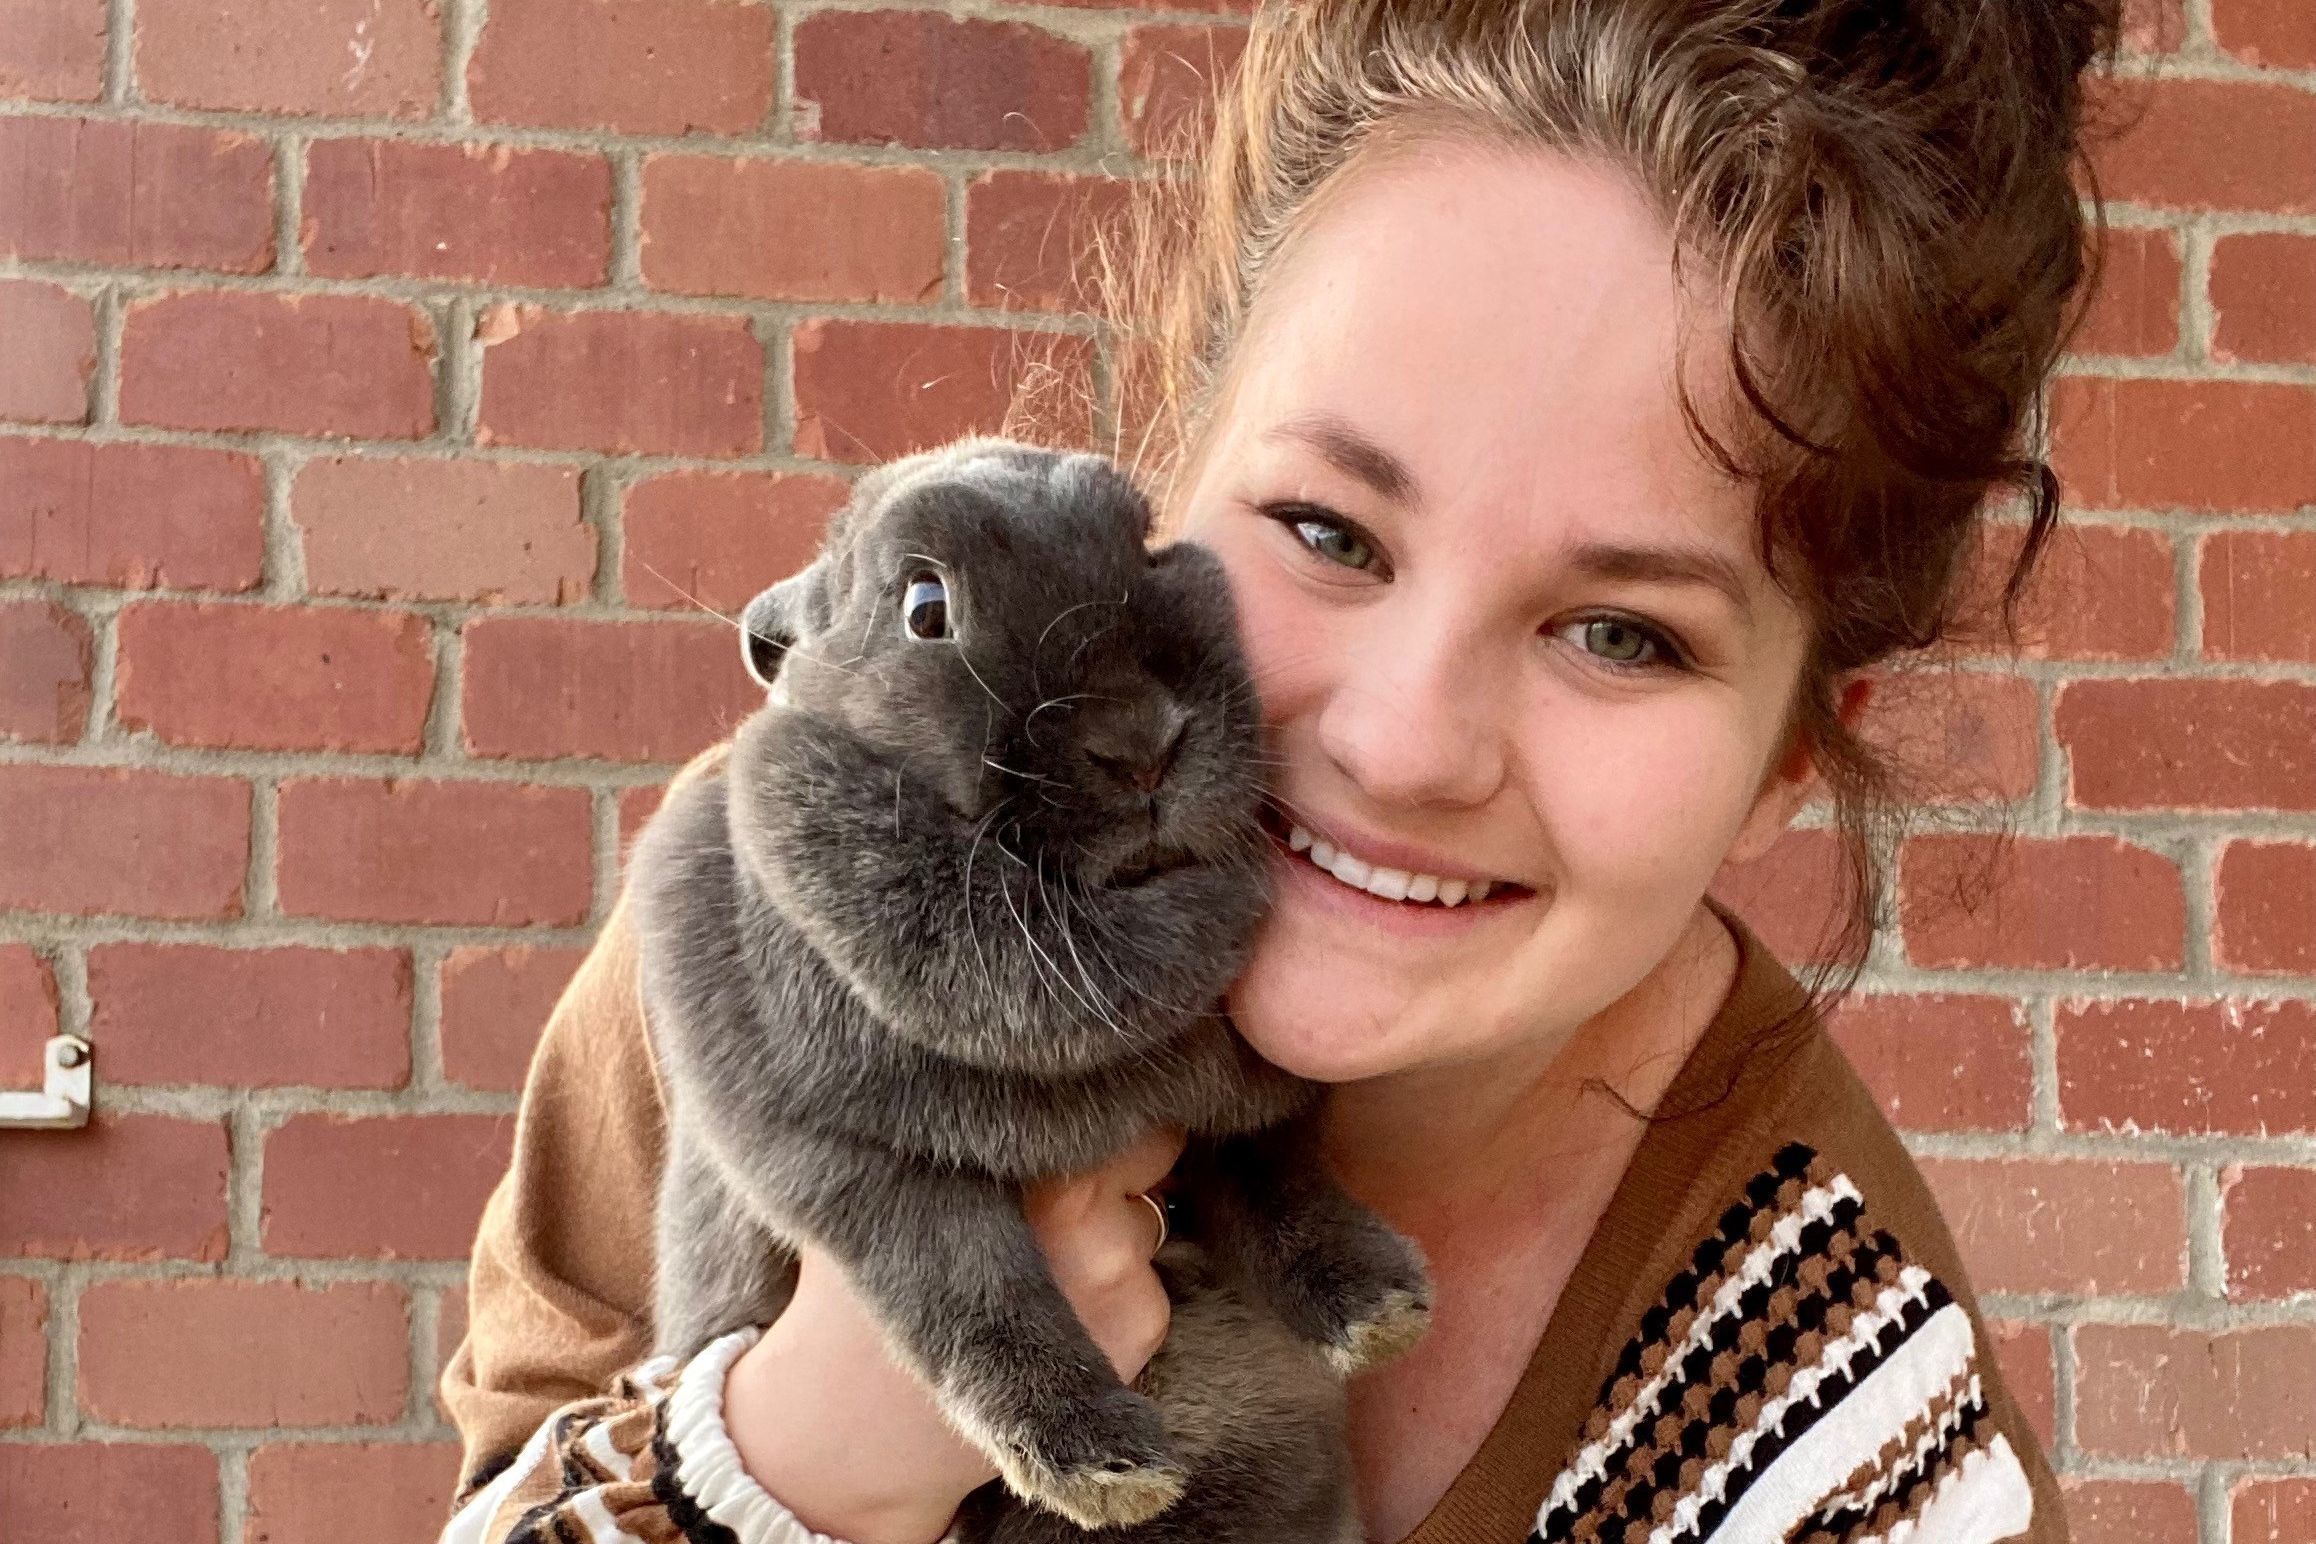 Delaney Patten with her rabbit, Miss Radar